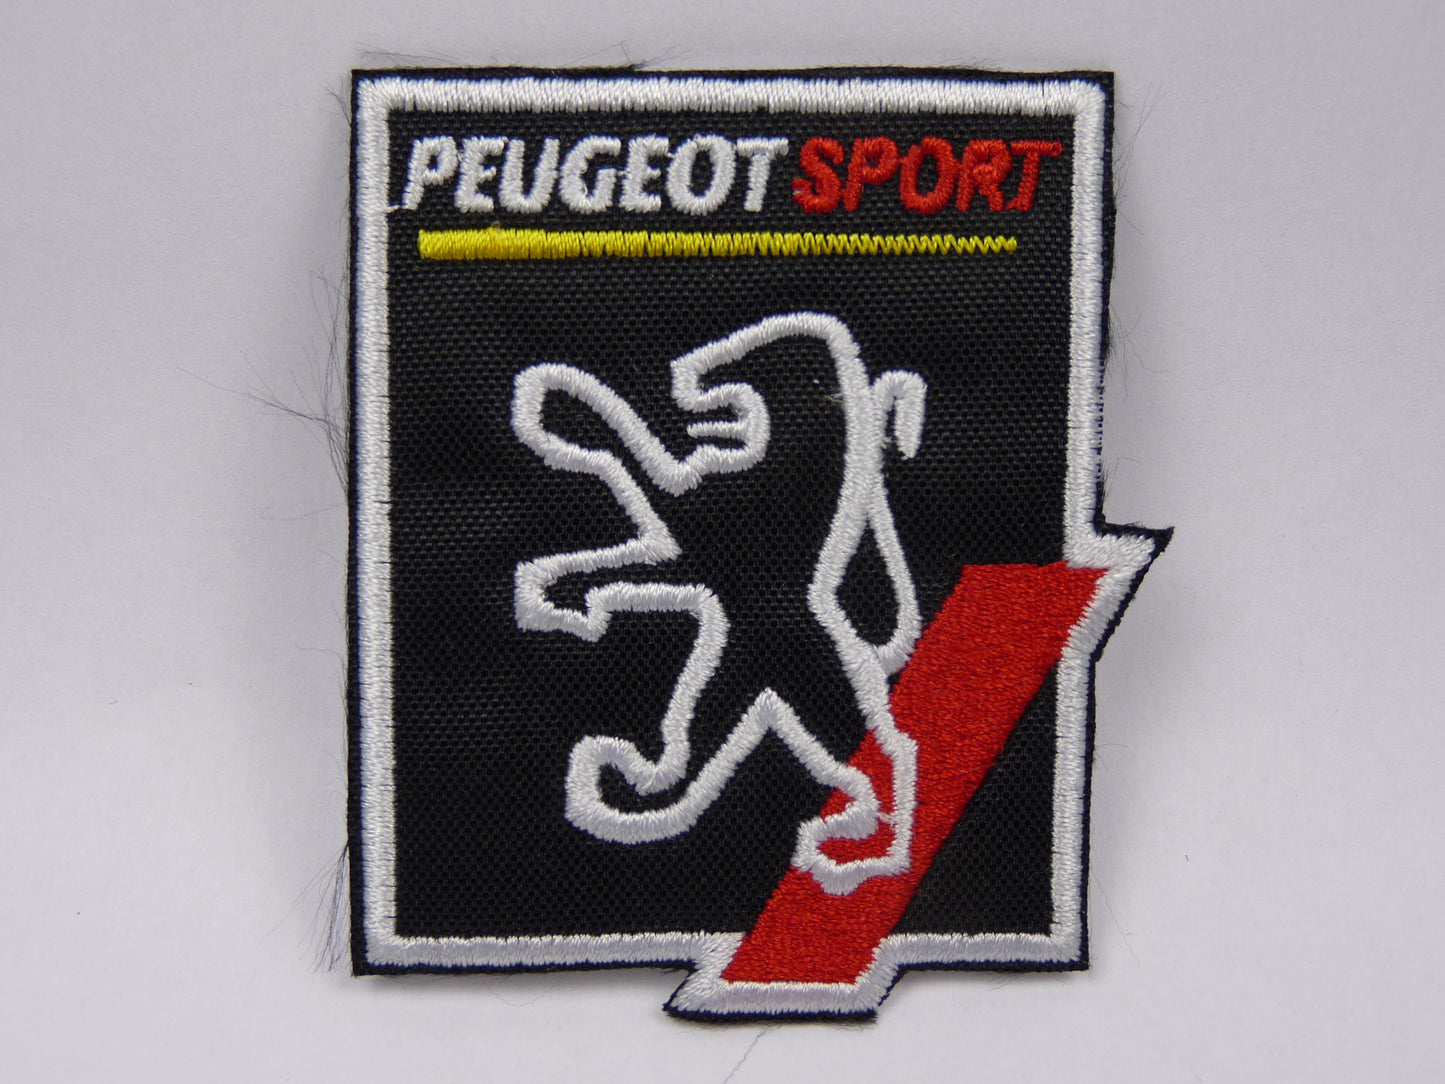 PTC110 Patch brodé thermocollé : logo Peugeot sport largeur environ 6.1 cm hauteur environ 7 cm